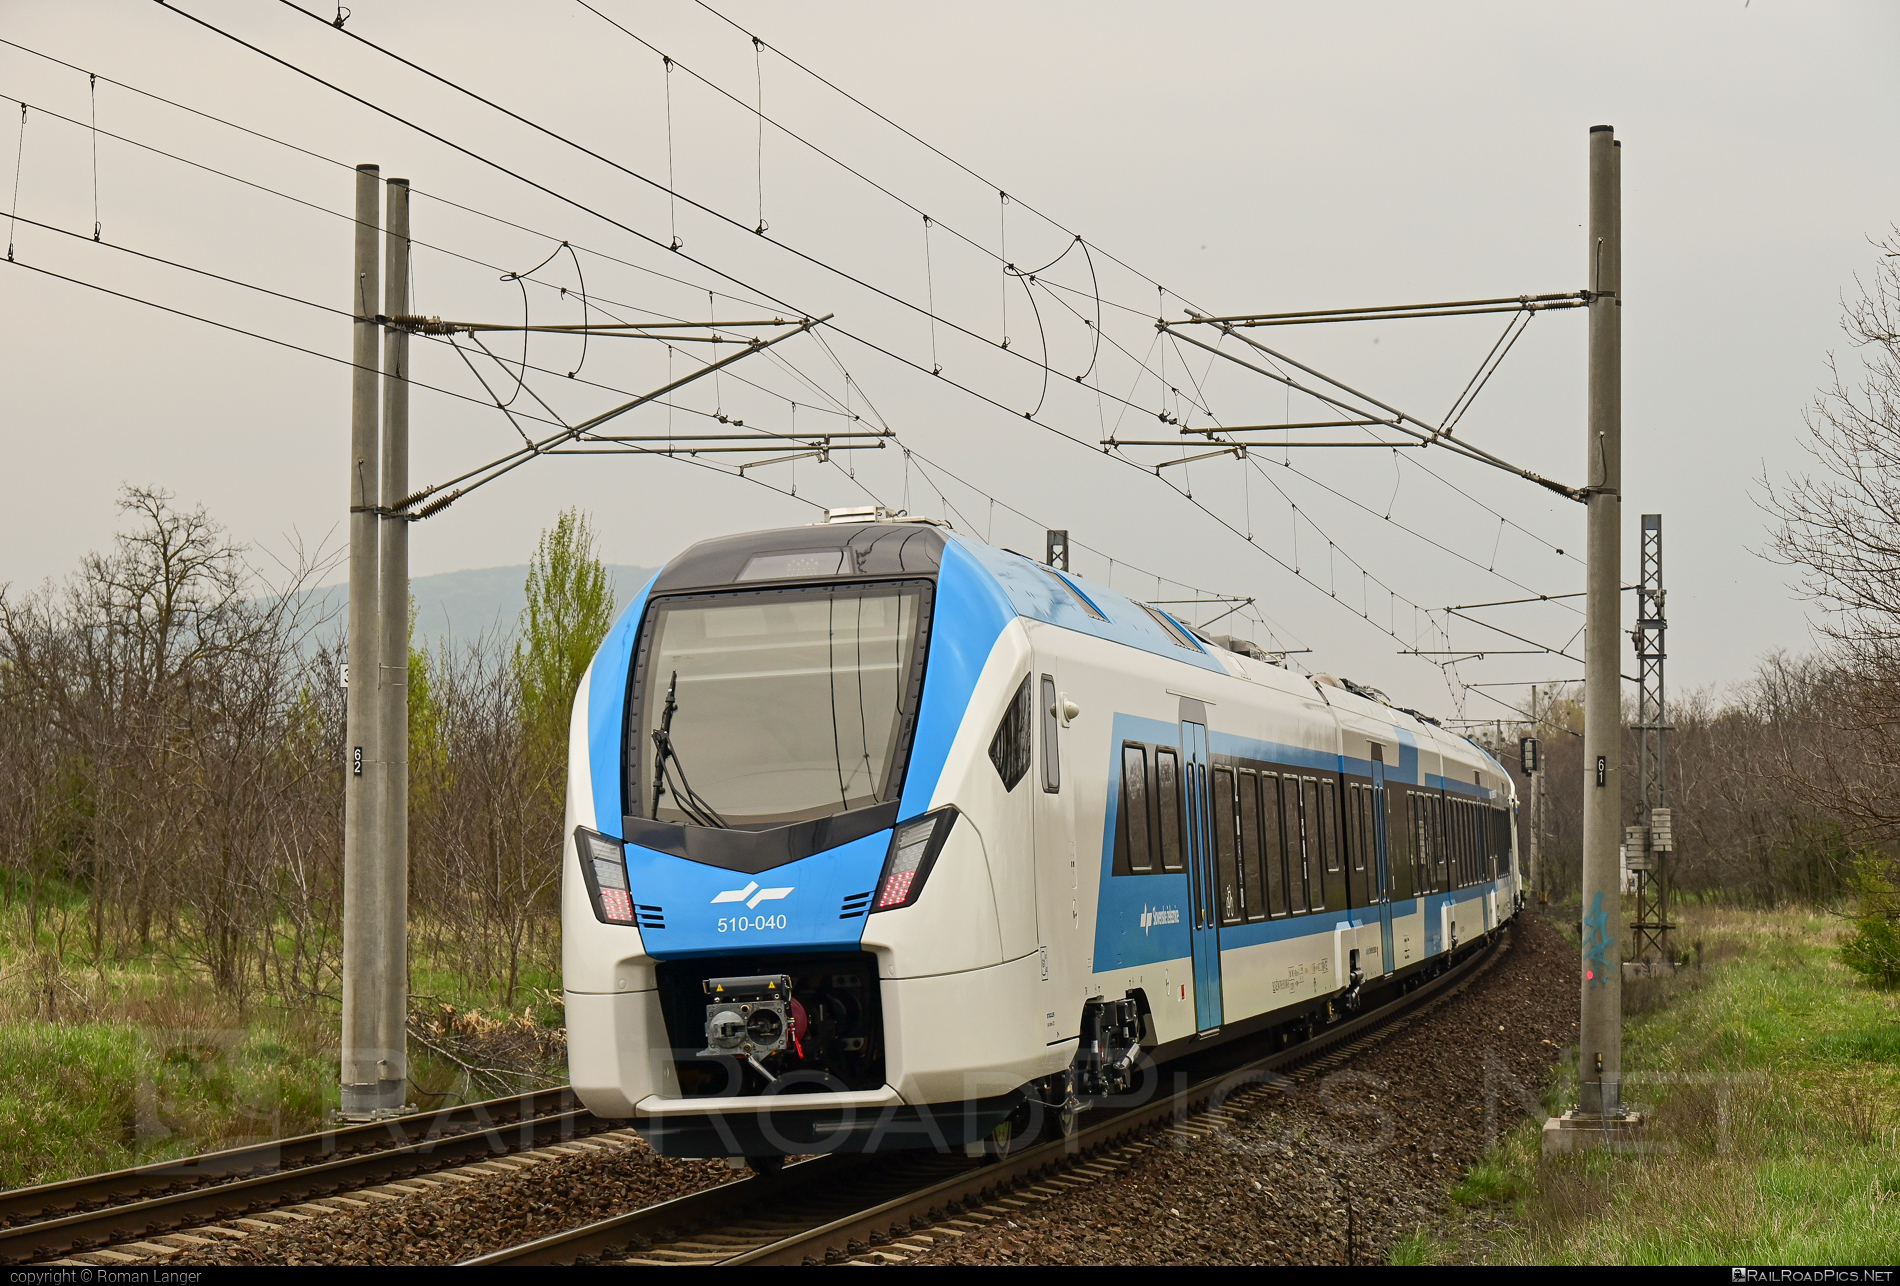 Stadler FLIRT - 510 040 operated by Slovenske železnice #SlovenskeZeleznice #stadler #stadlerFlirt #stadlerrail #stadlerrailag #sz